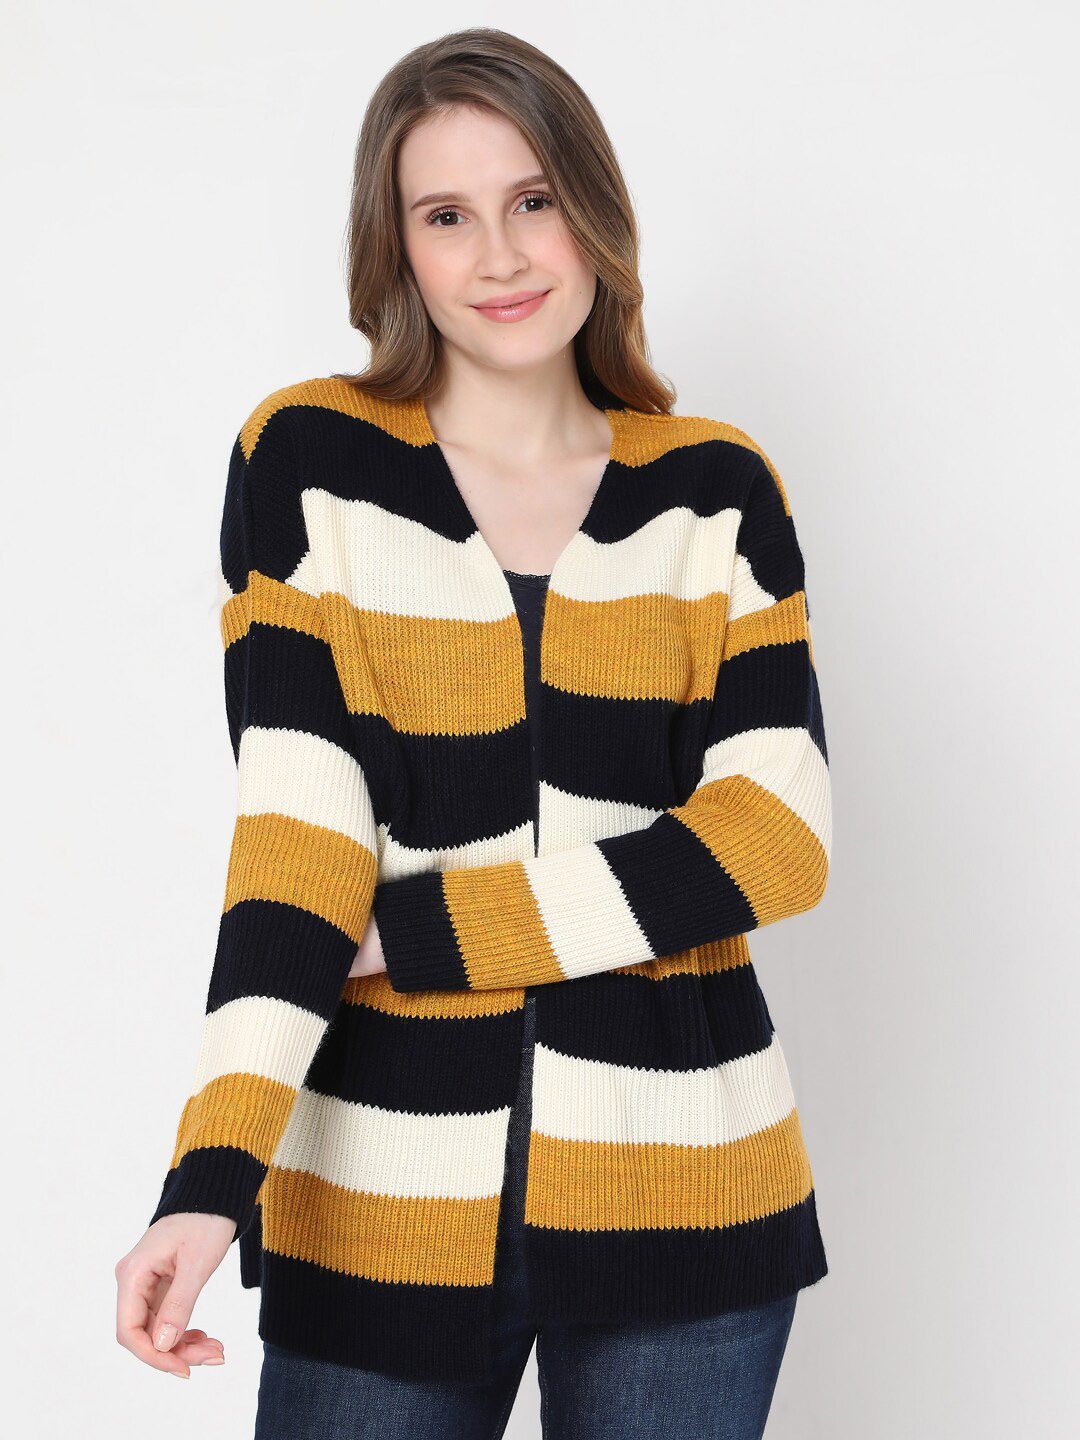 Vero Moda Women Brown & White Striped Acrylic Sweater Price in India